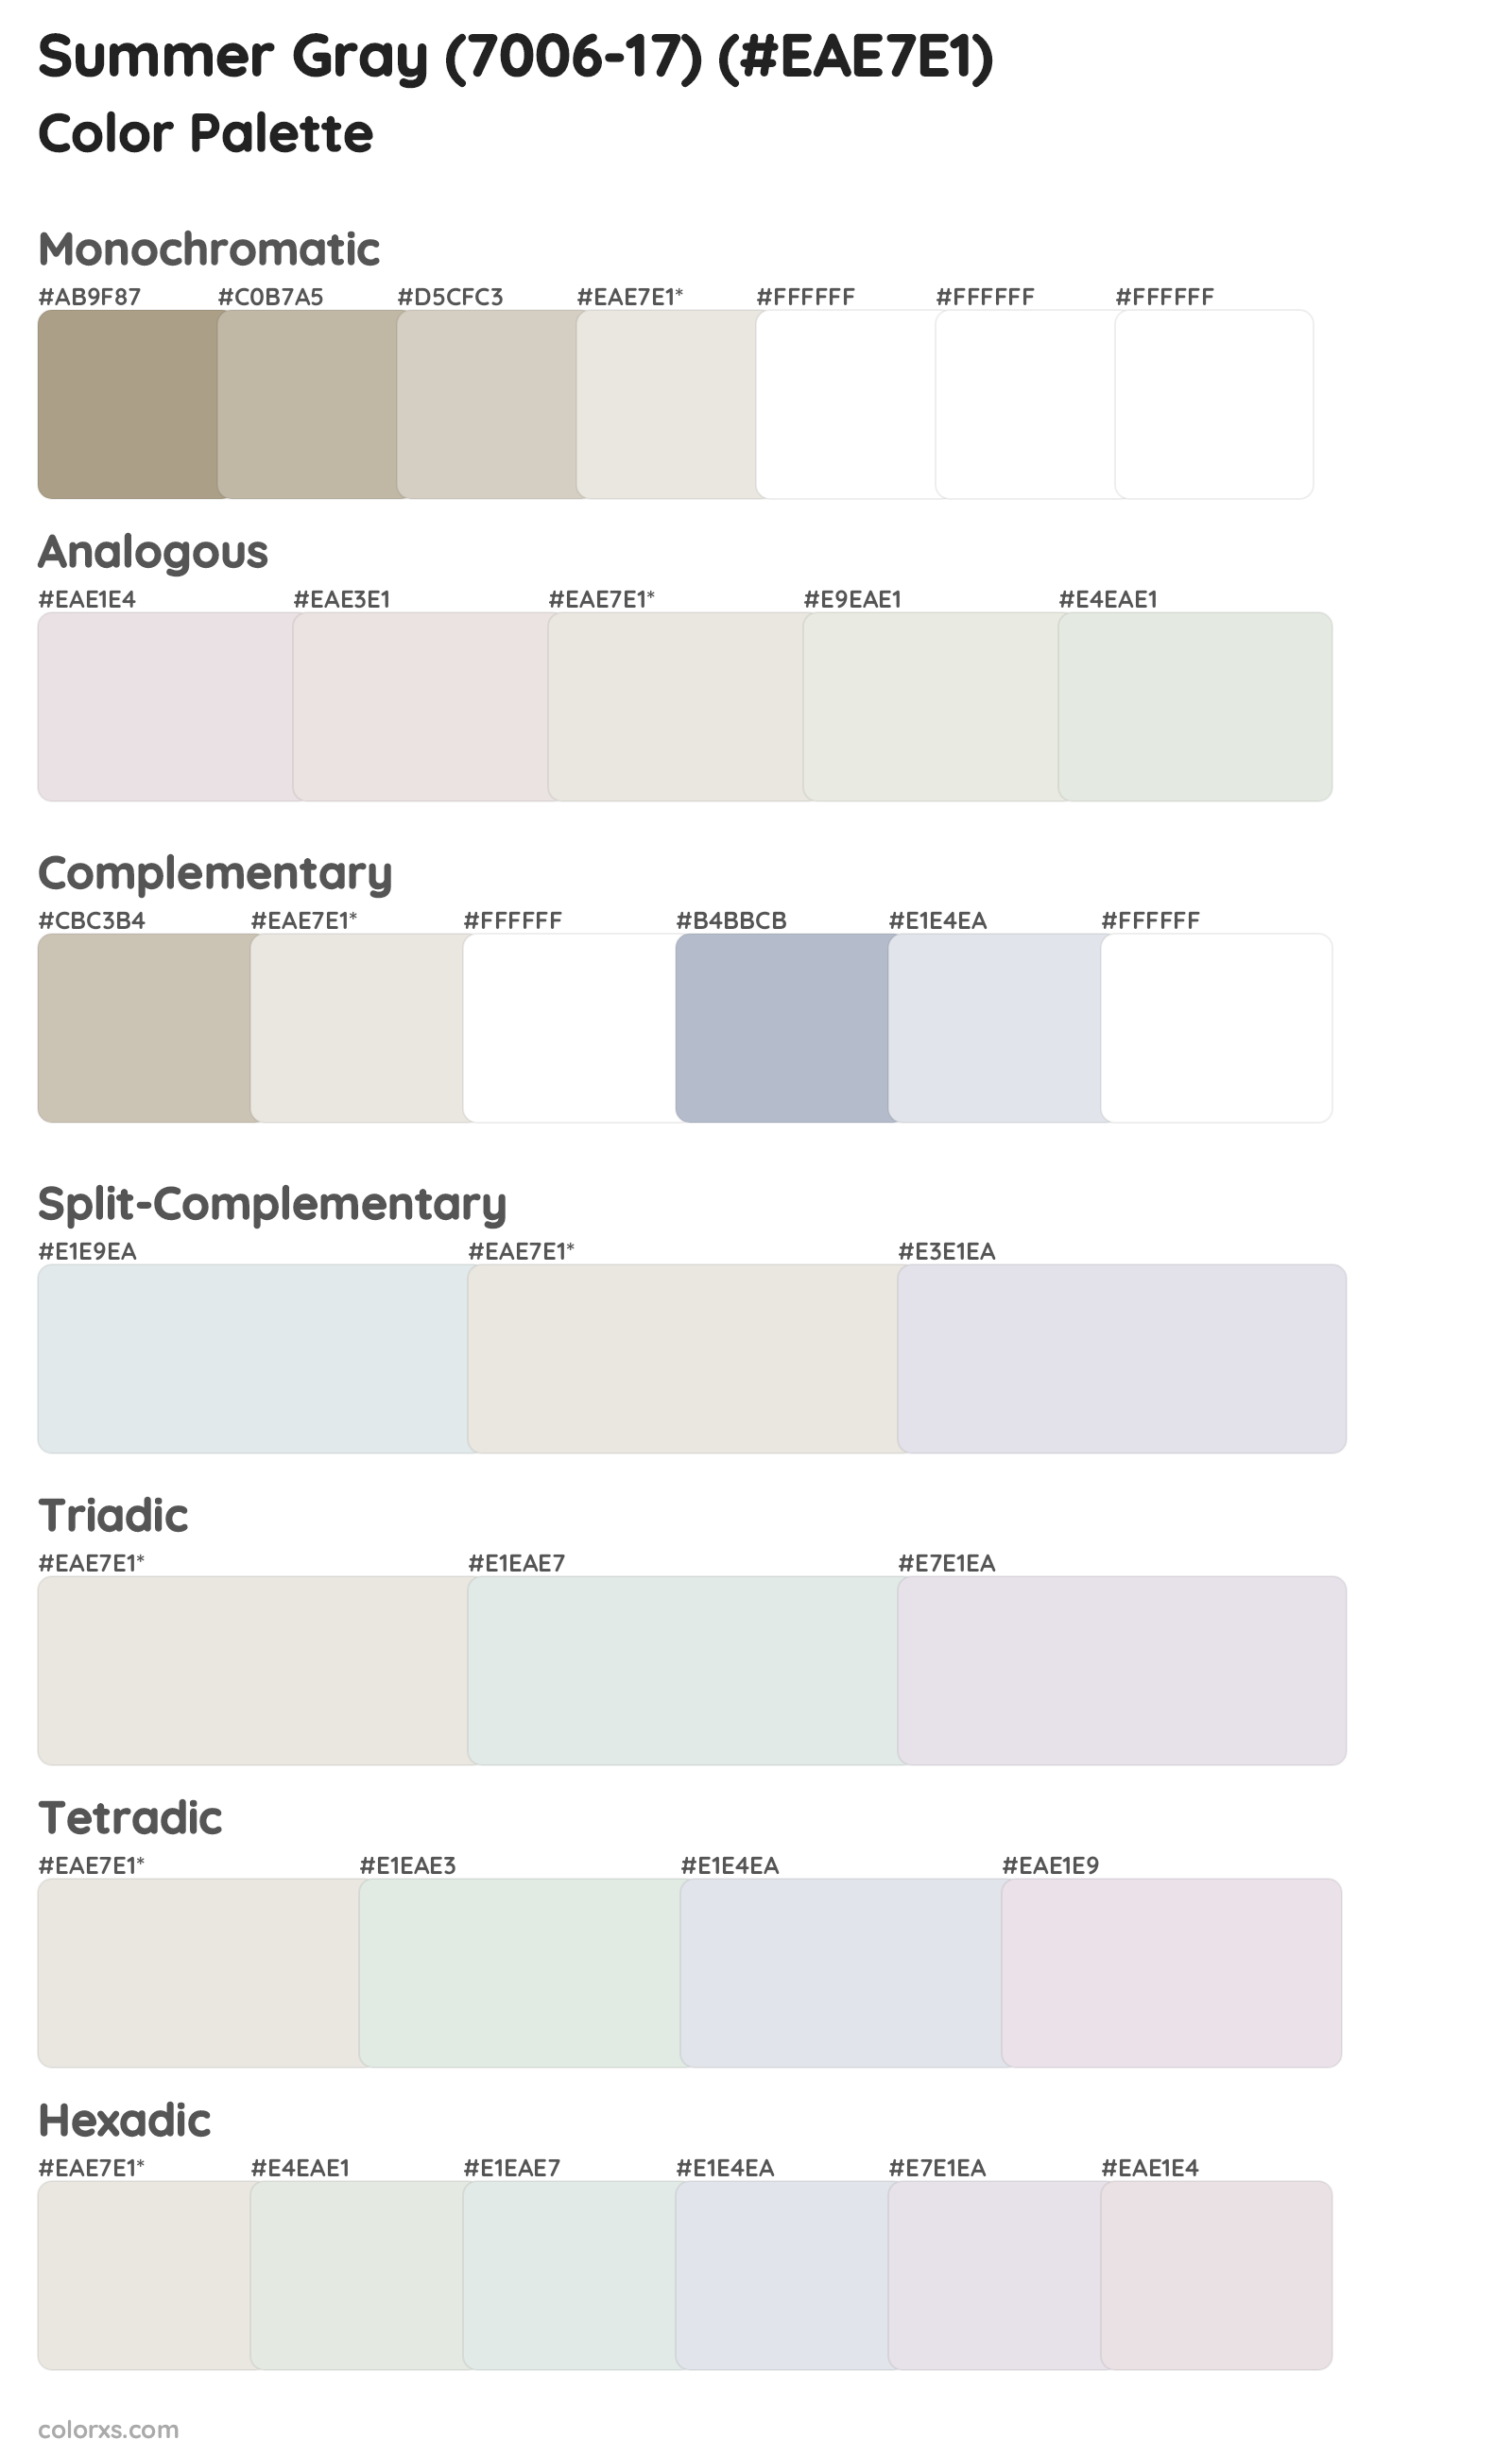 Summer Gray (7006-17) Color Scheme Palettes